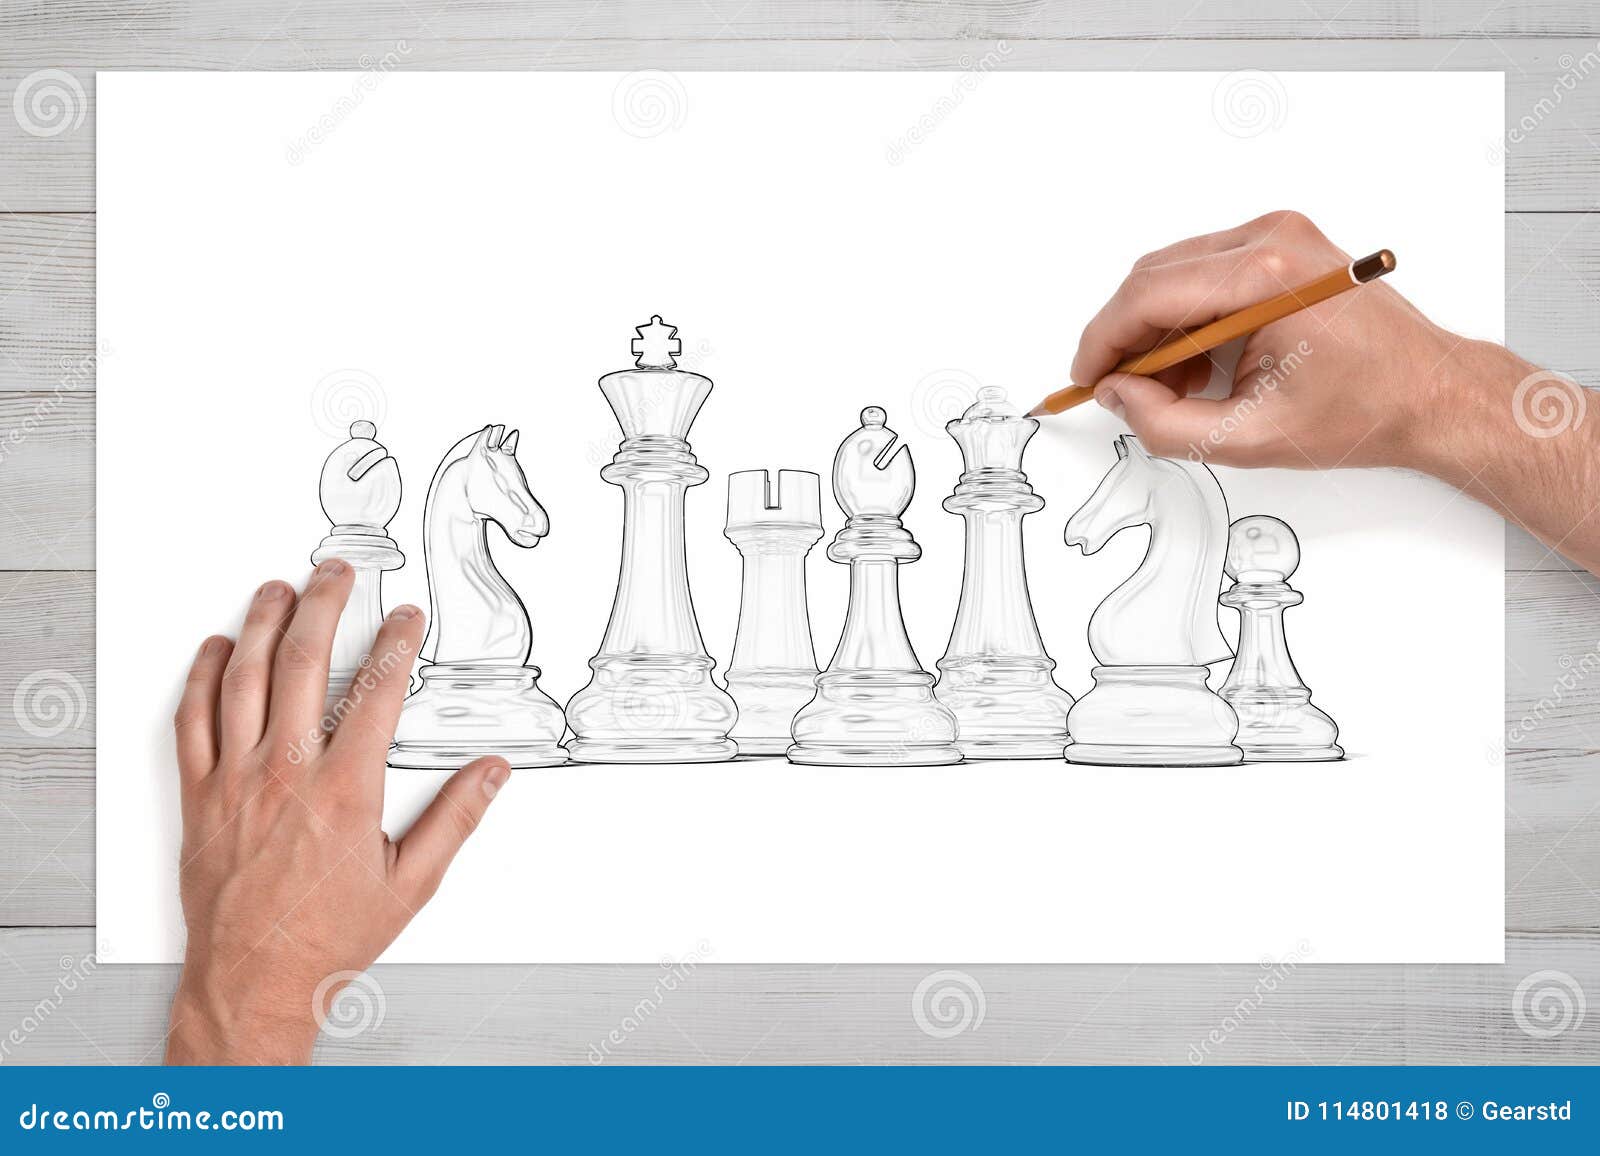 Mannliche Hande Benutzen Einen Bleistift Um Einen Ganzen Satz Weisse Schachfiguren Auf Papier Zu Zeichnen Stockfoto Bild Von Mannliche Schachfiguren